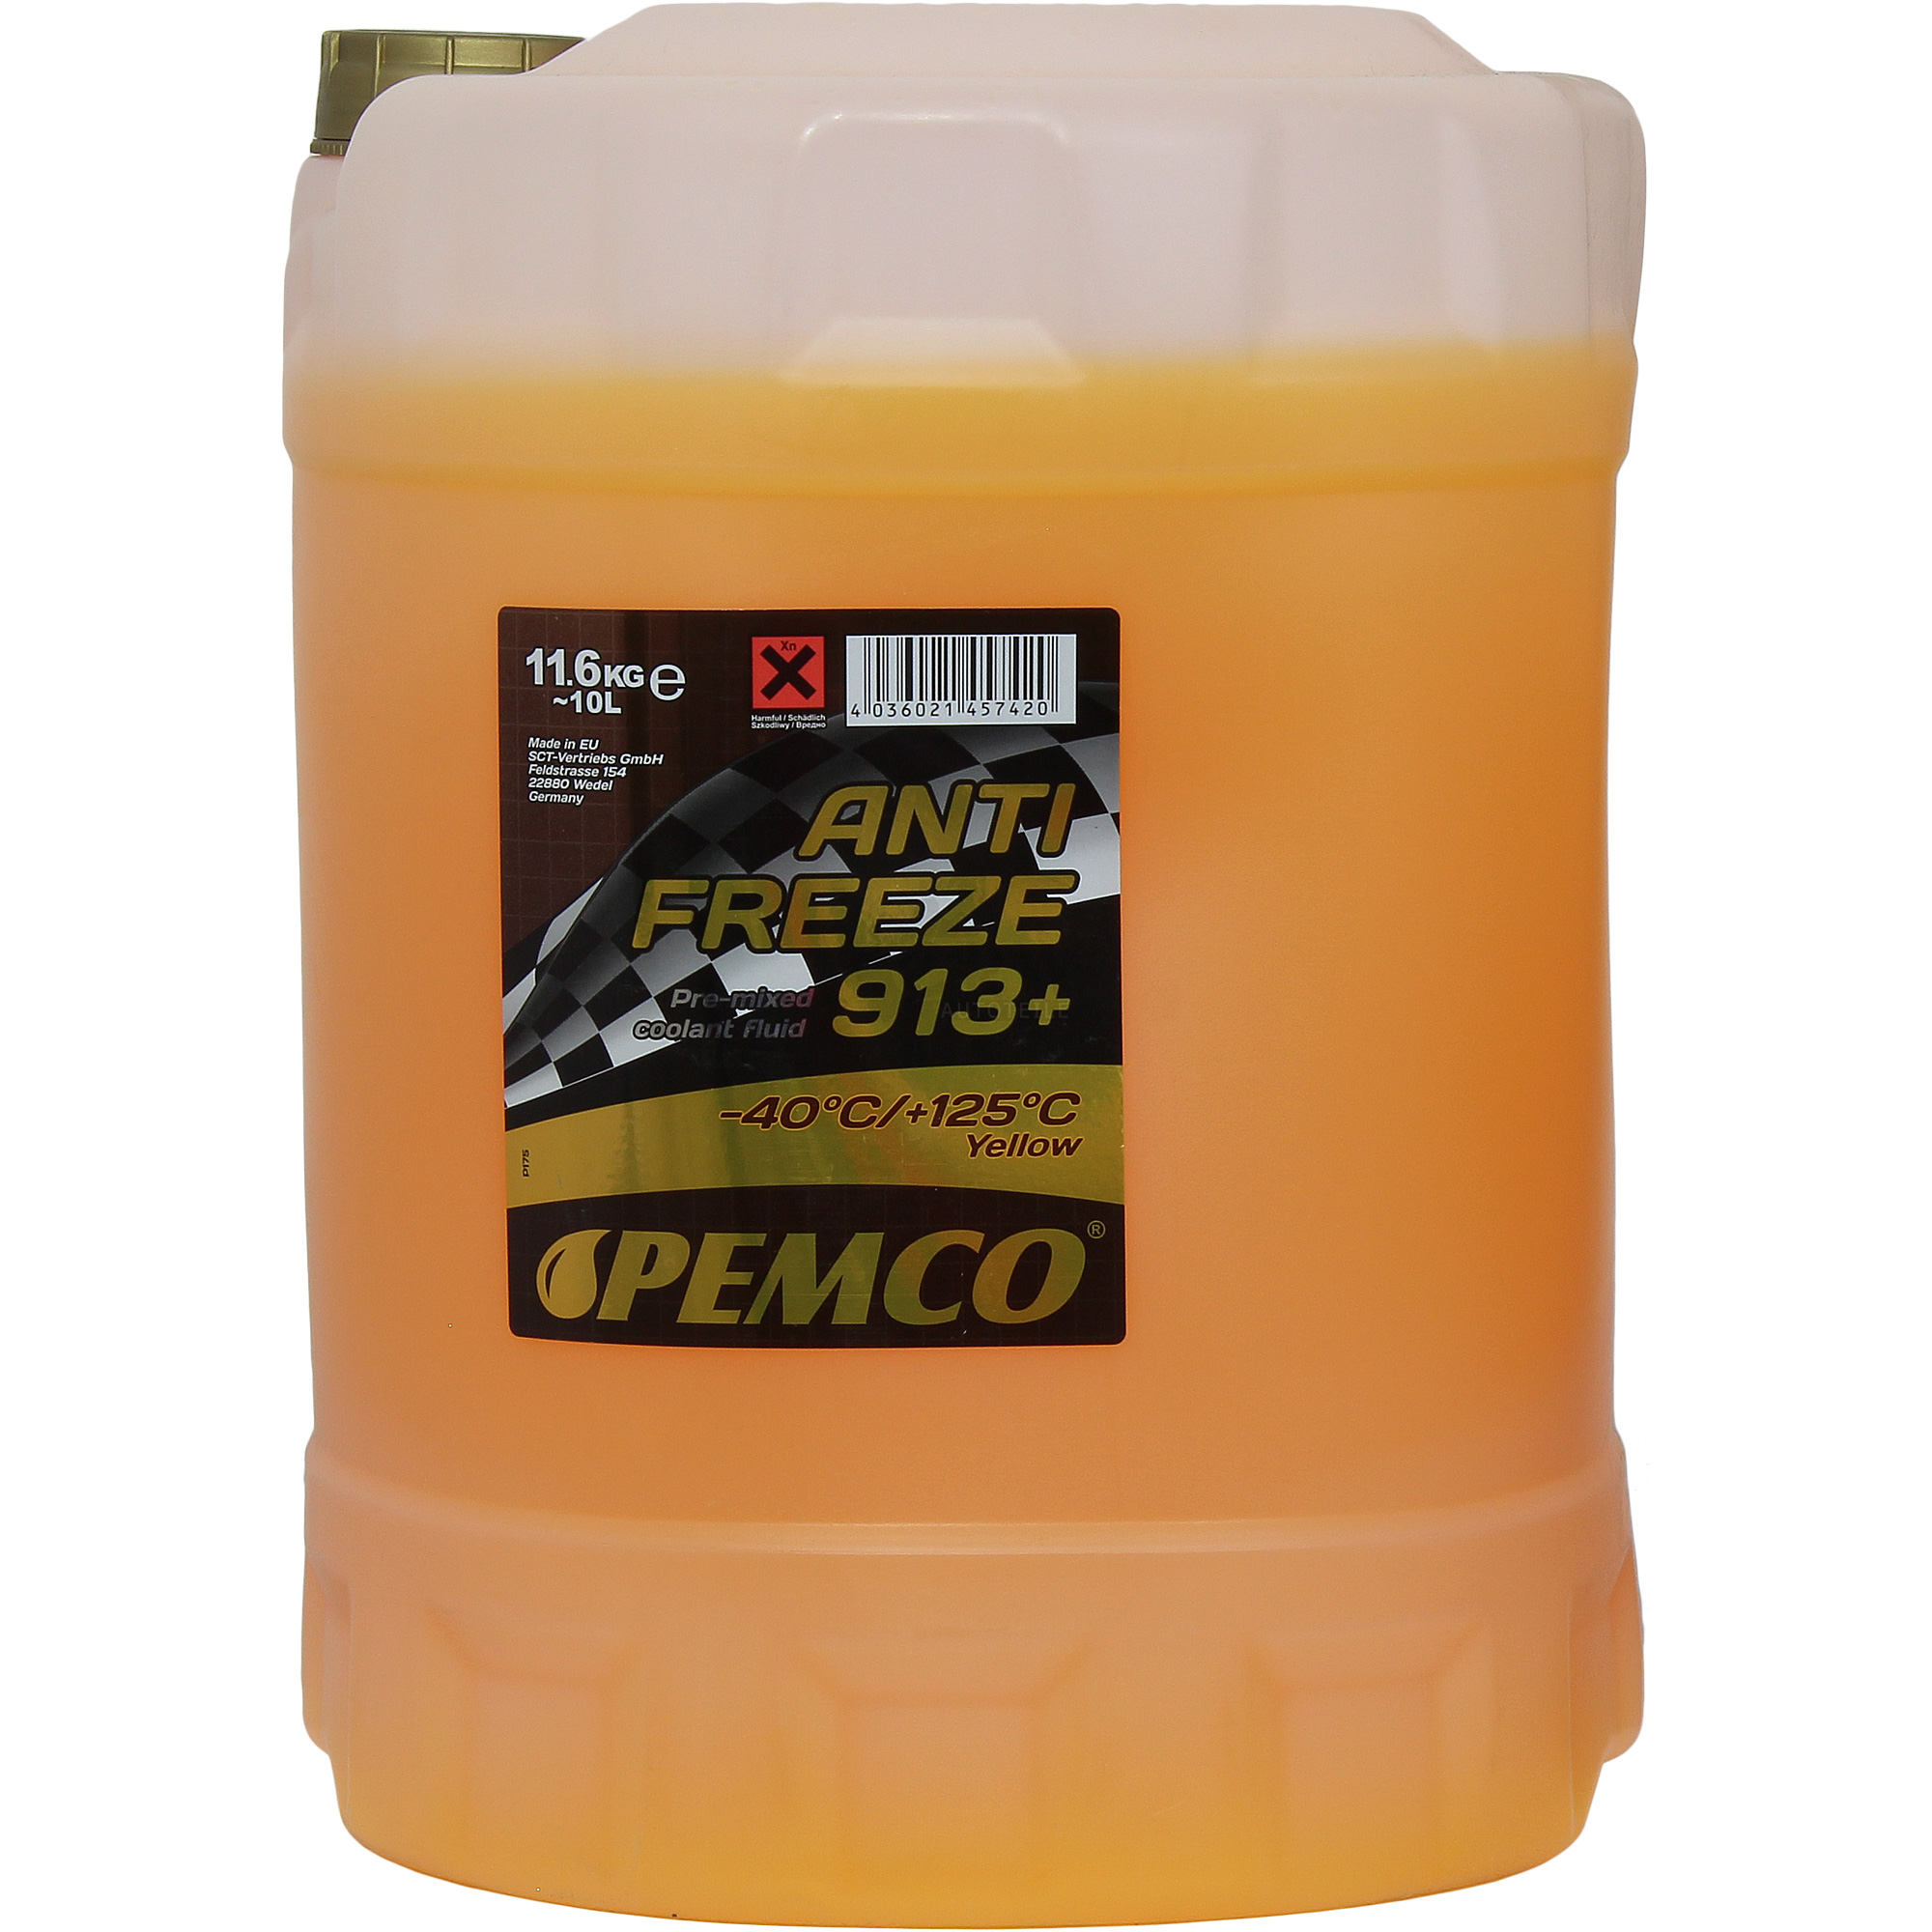 10 Liter  PEMCO Kühlerfrostschutz Antifreeze 913+ (-40) gelb yellow G13+